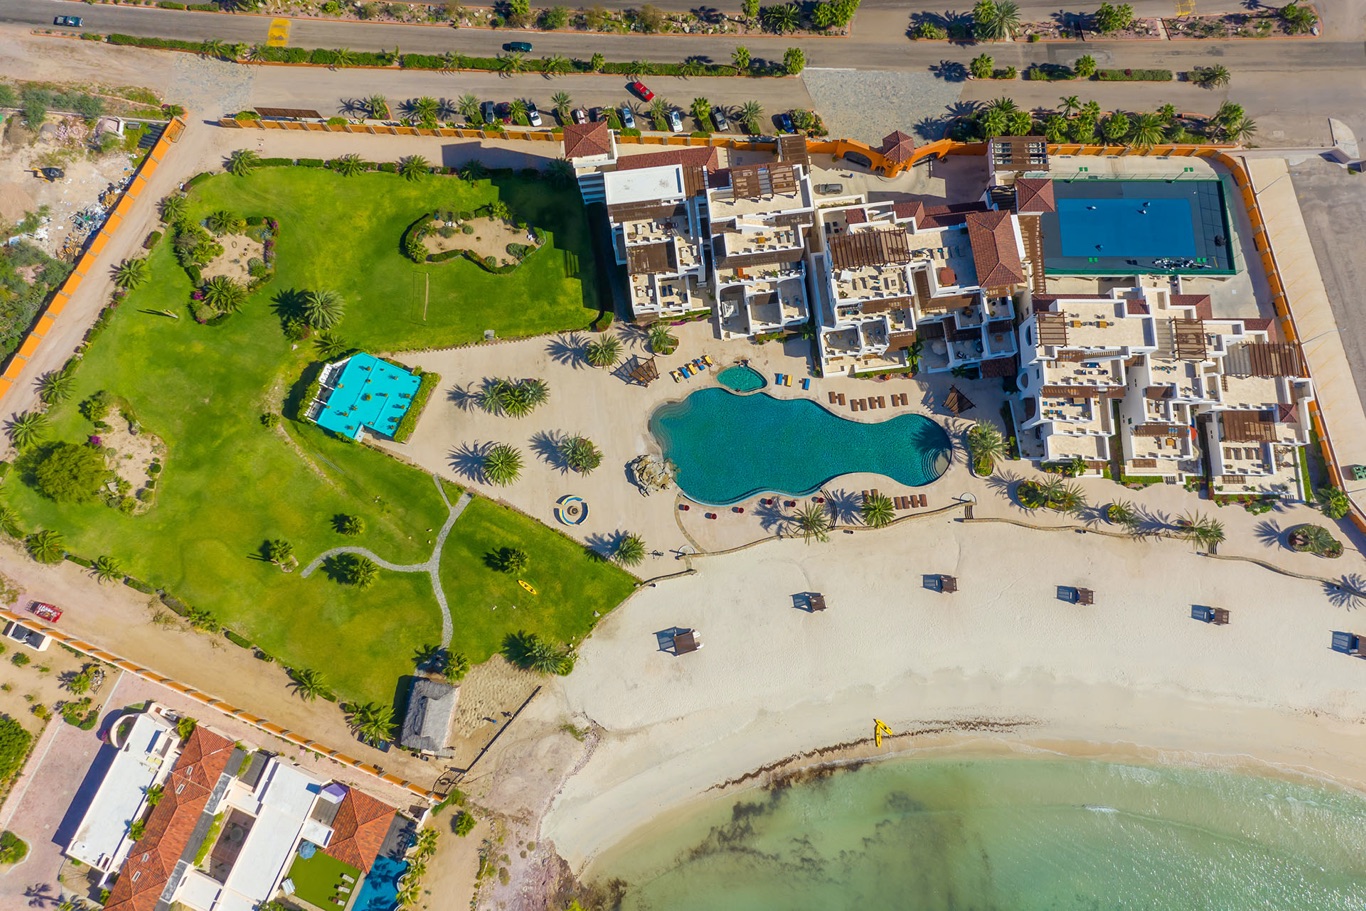 Playa-de-la-paz-The-Agency-Los-Cabos-Real-estate1